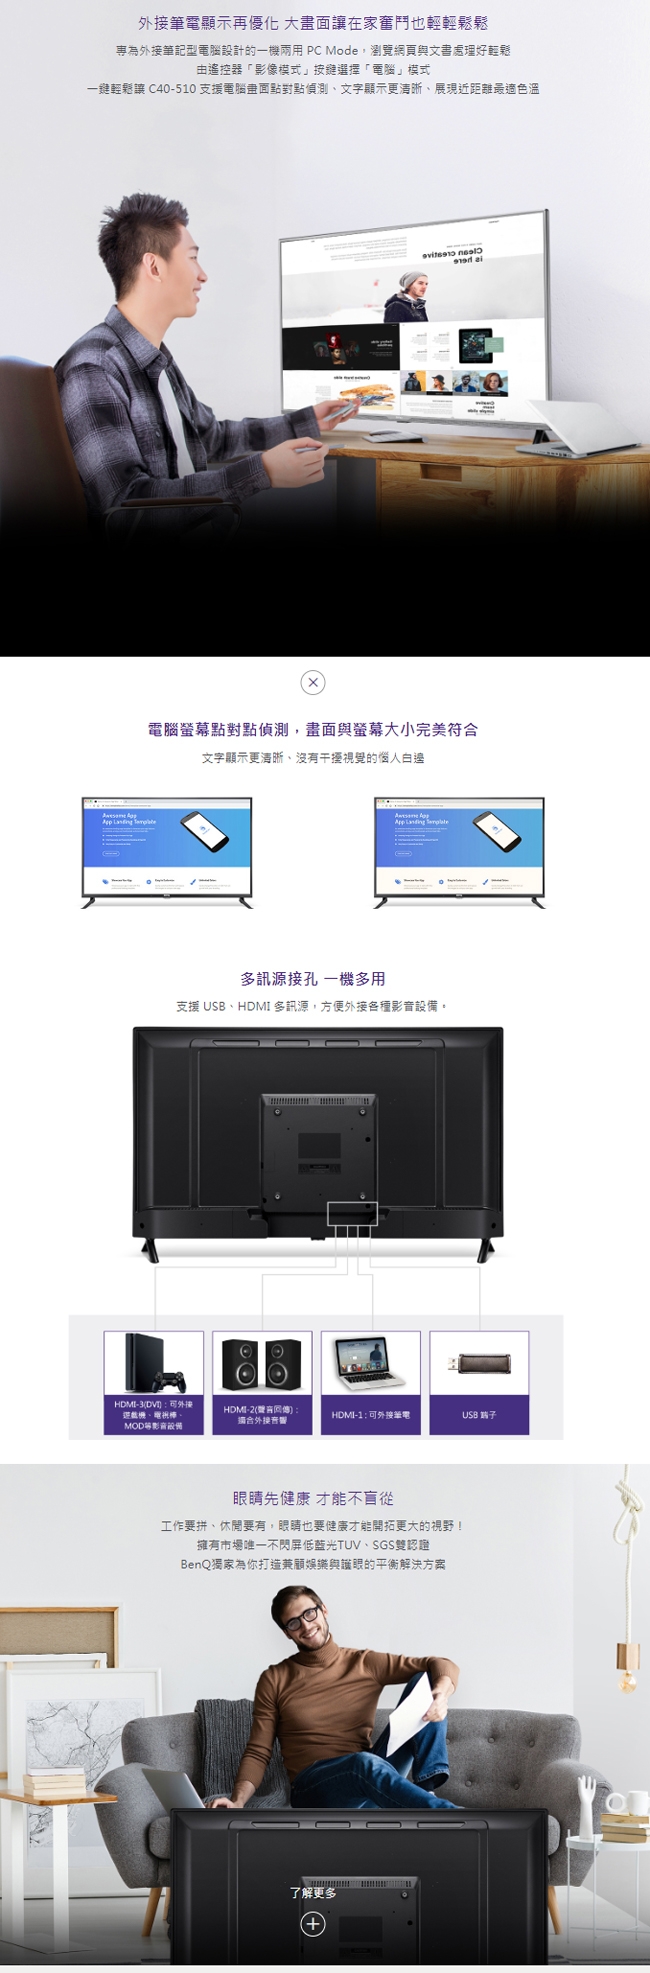 BenQ 40吋 Full HD 黑湛屏低藍光 液晶顯示器+視訊盒 C40-510